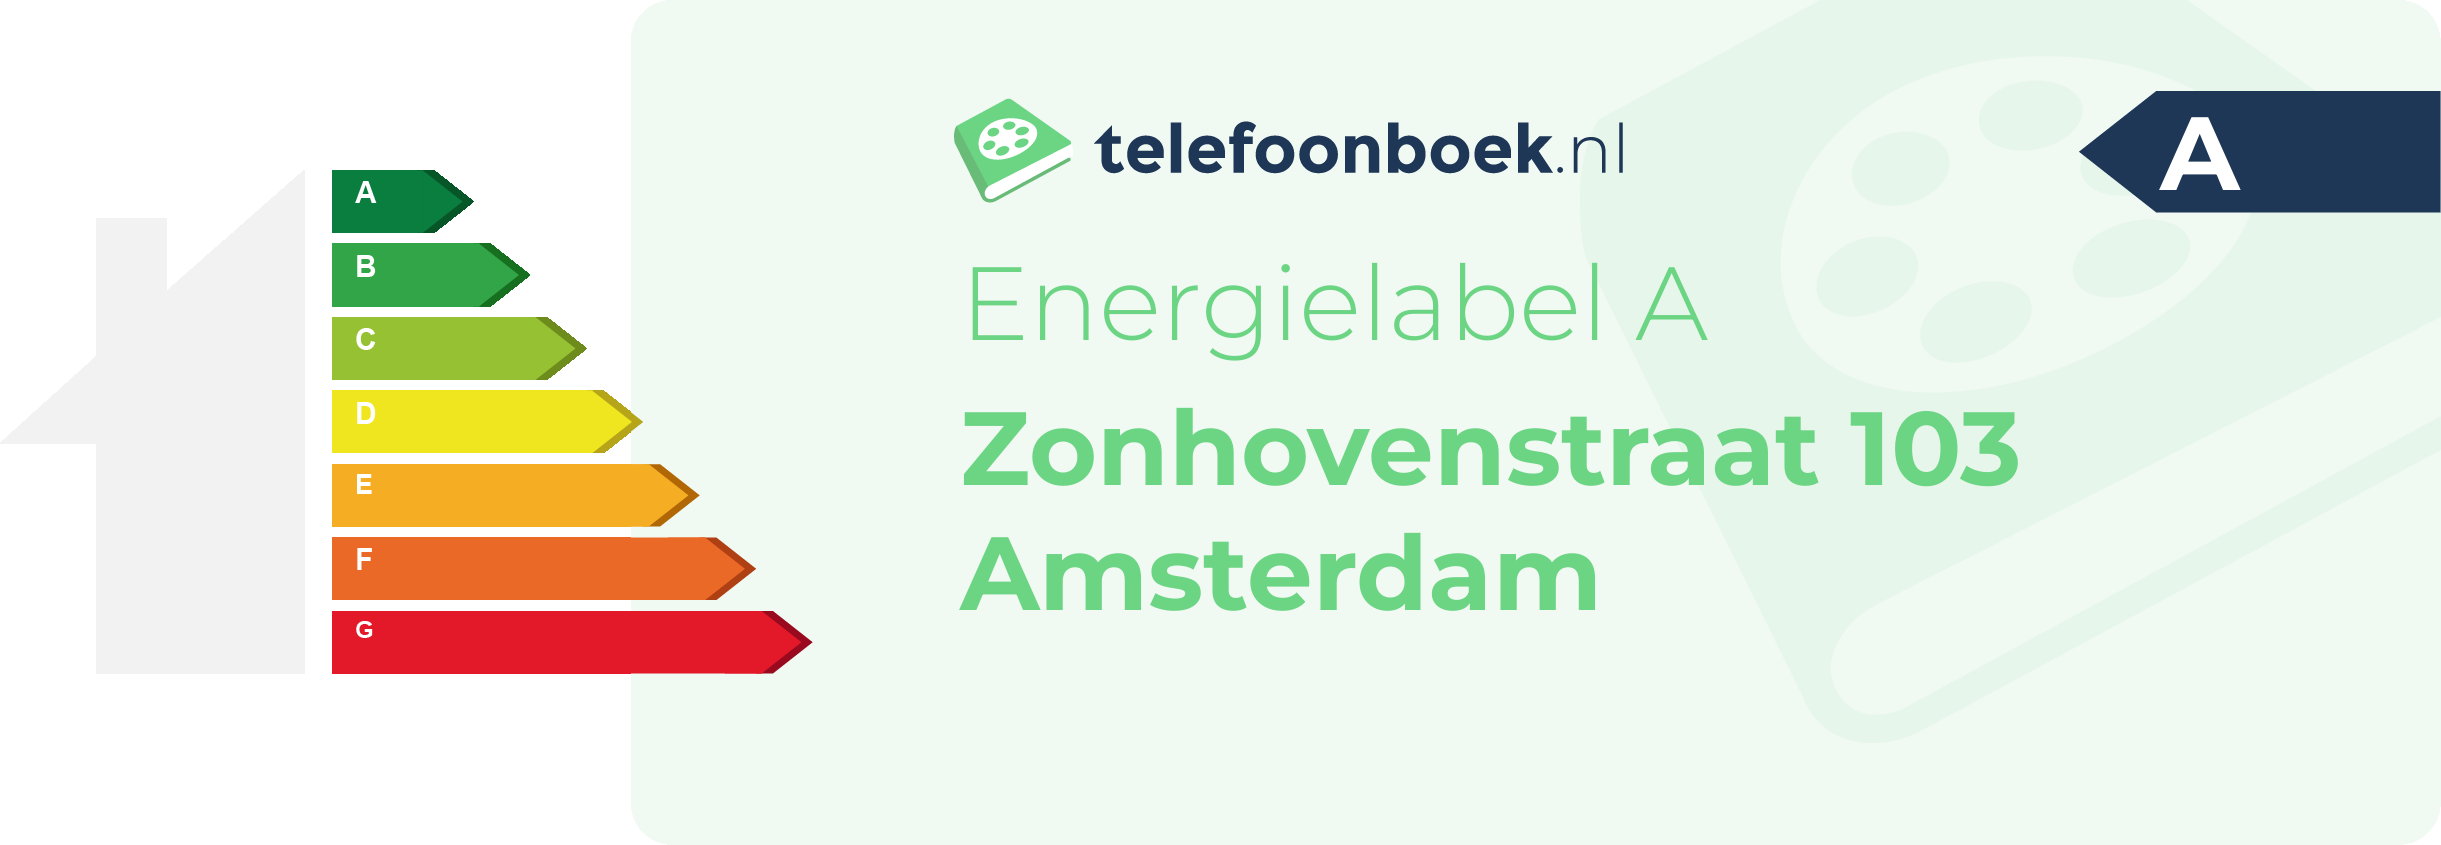 Energielabel Zonhovenstraat 103 Amsterdam